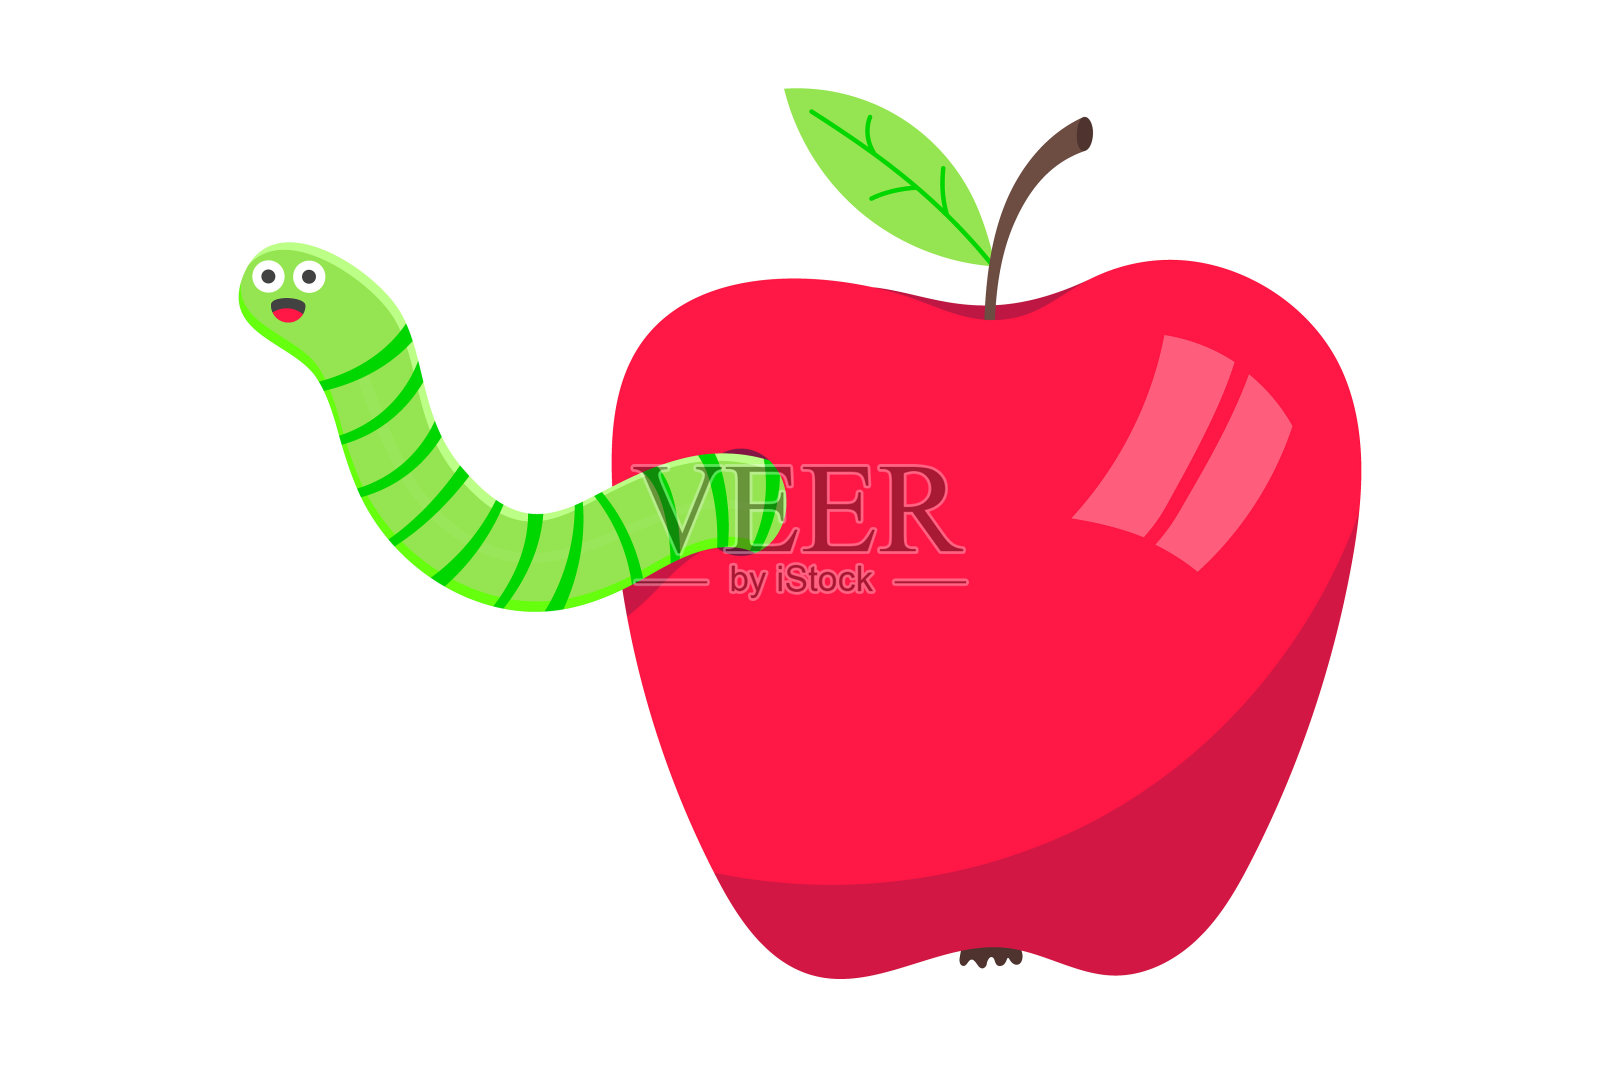 蚯蚓与苹果卡通人物图标叹气。蠕虫面带微笑的表情弹出上方的苹果平面风格设计矢量插图。爬行动物的生物。设计元素图片